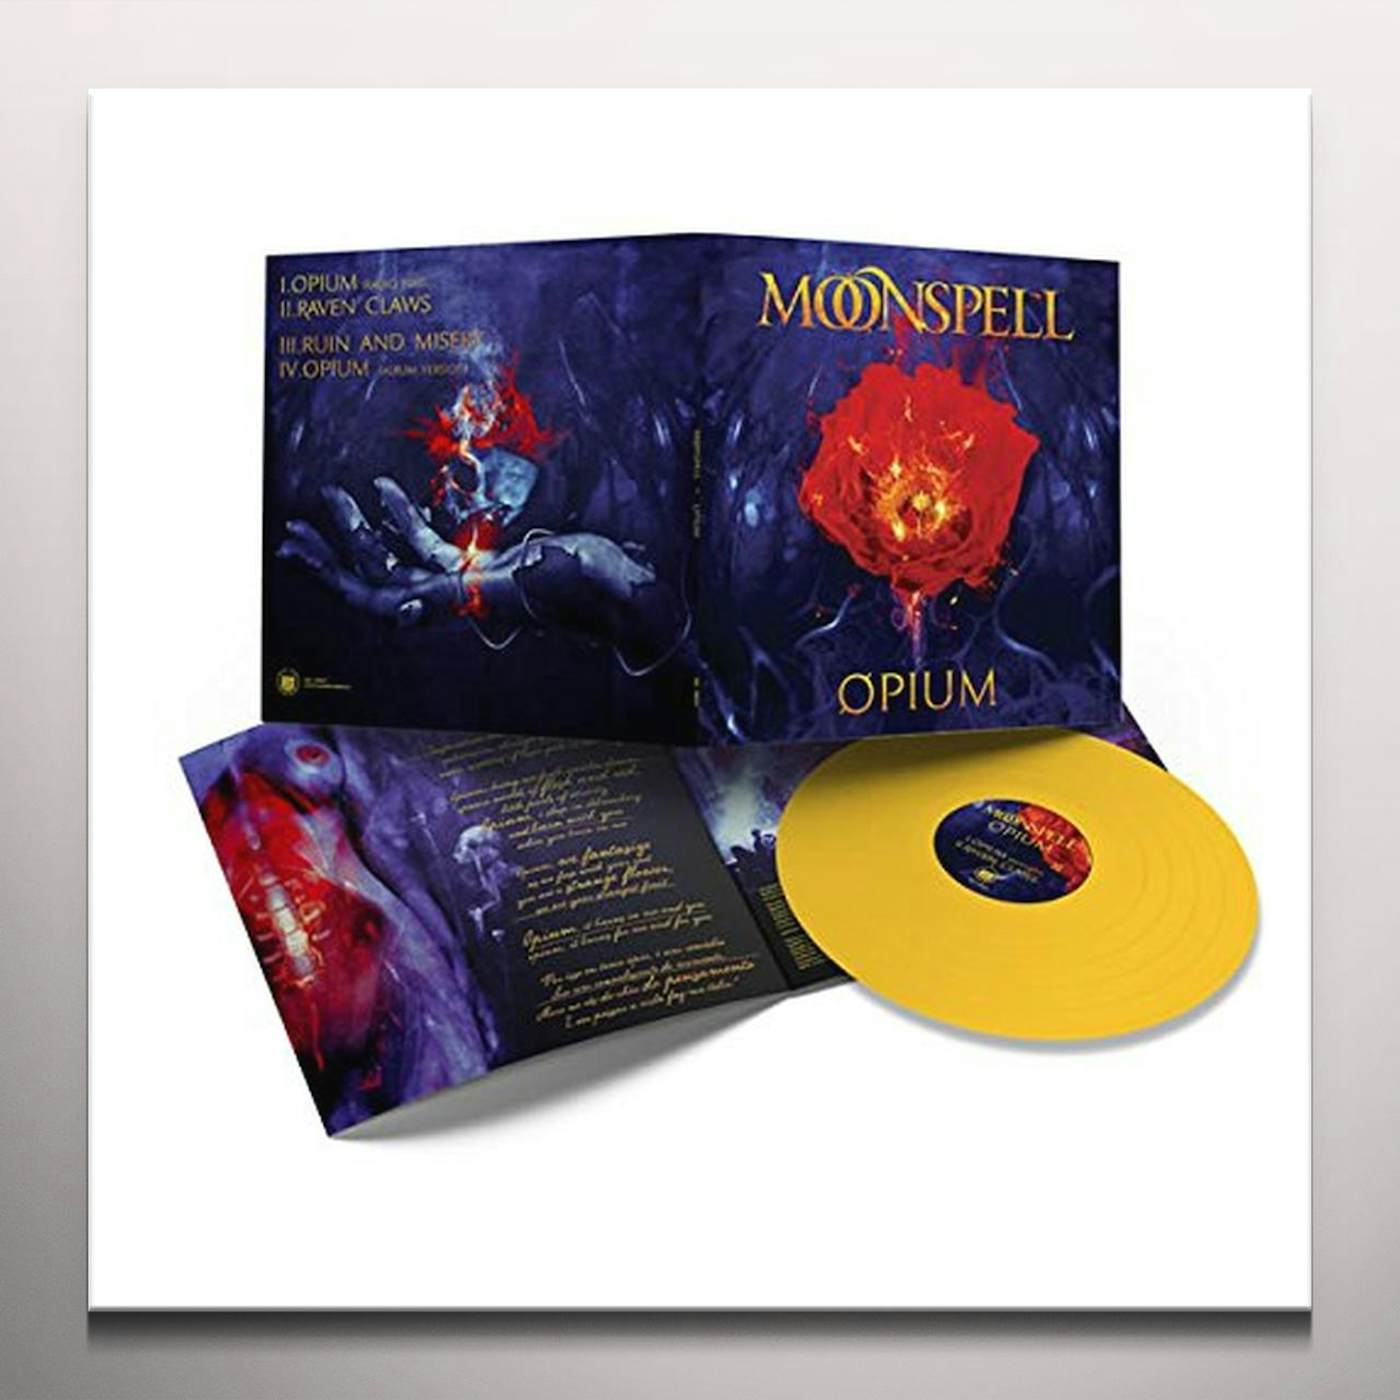 Moonspell OPIUM (MUSTARD YELLOW VINYL) Vinyl Record